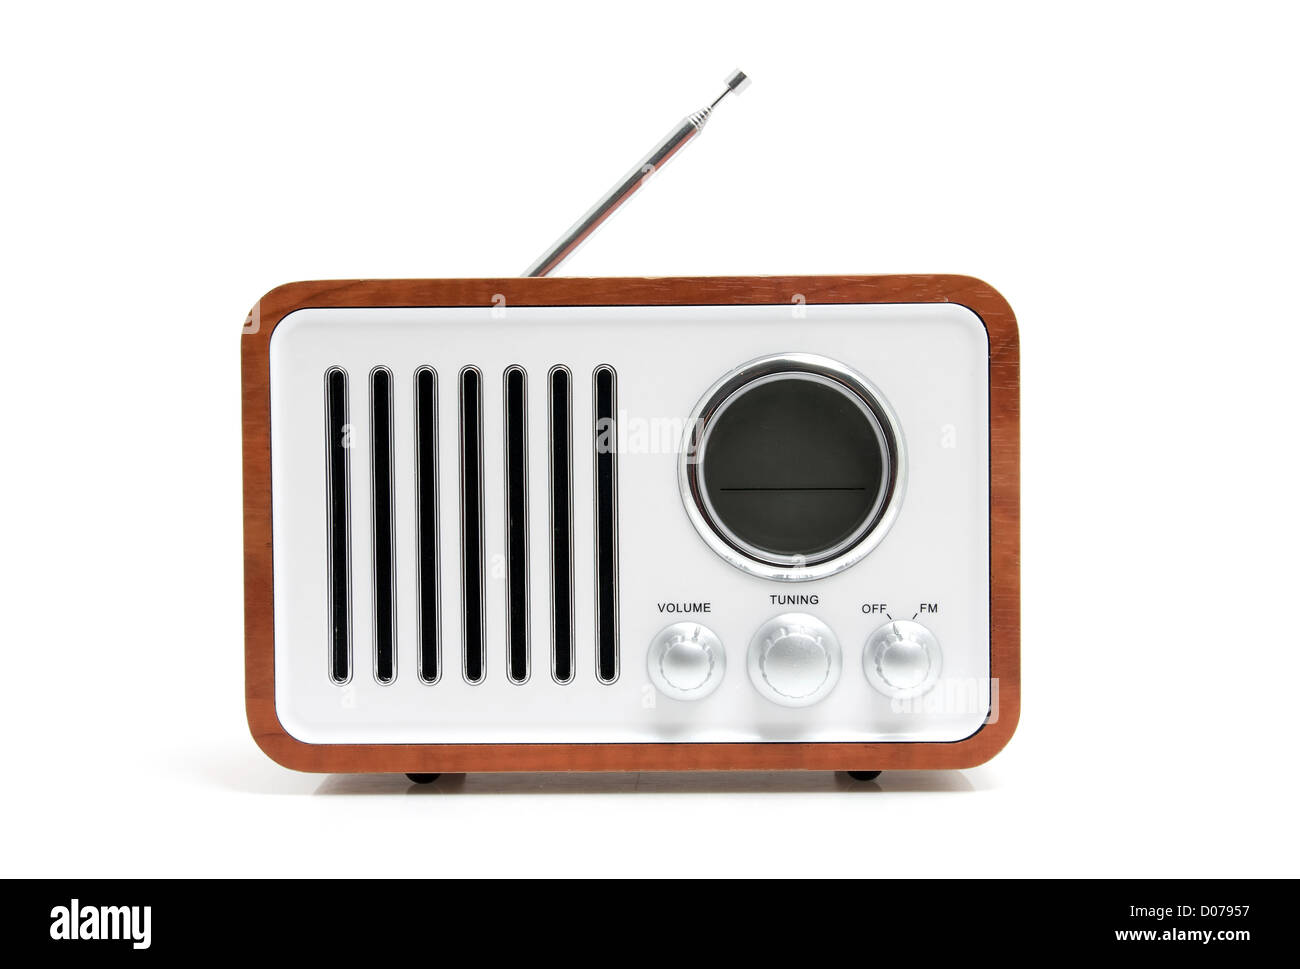 Old fashioned radio isolated on white background Stock Photo